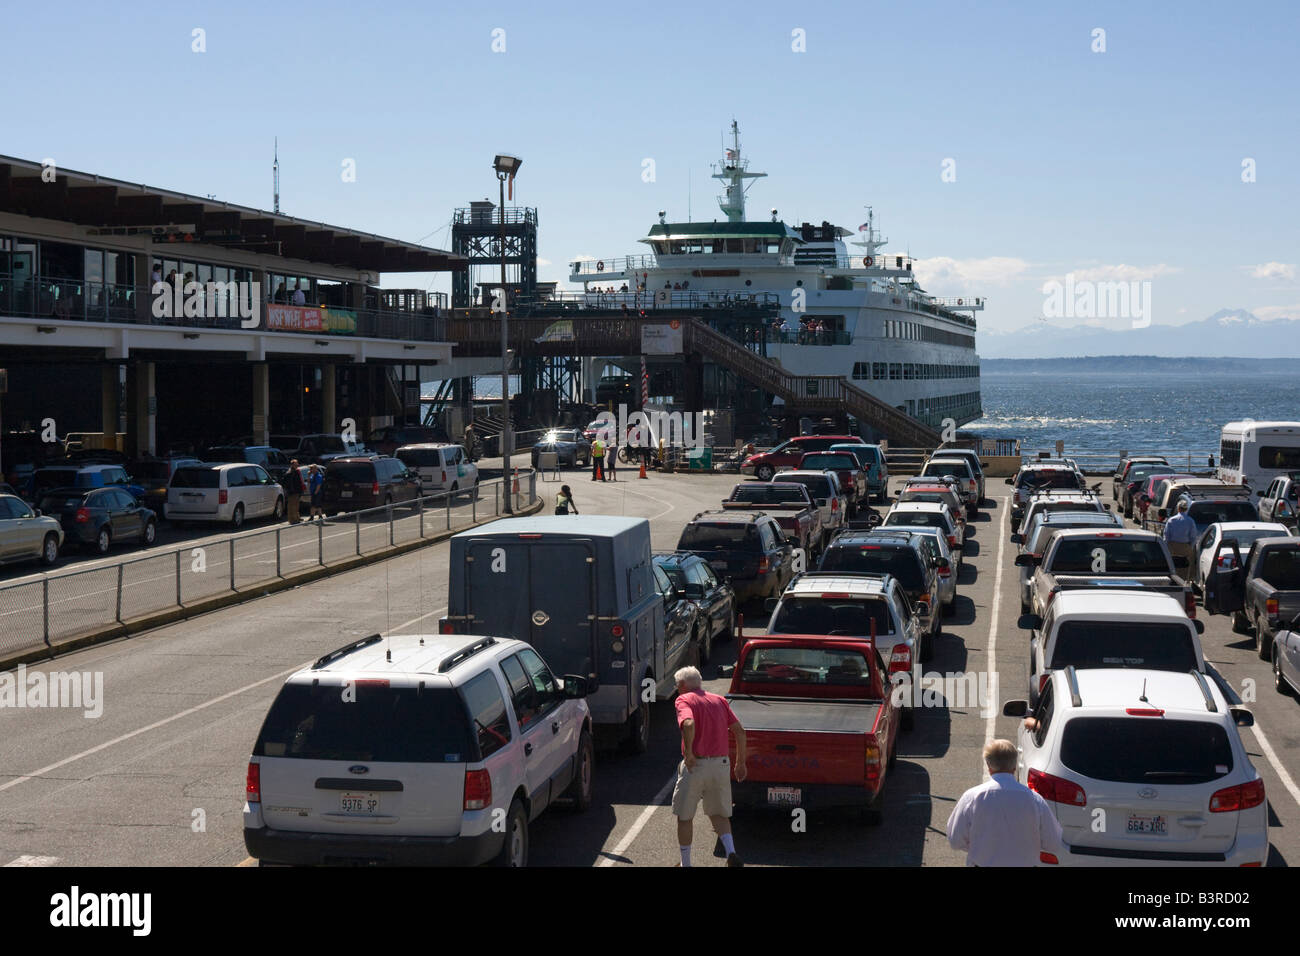 Les voitures en attente de Washington State Ferry Terminal de ferries de Seattle à Seattle, WA USA full car park Banque D'Images